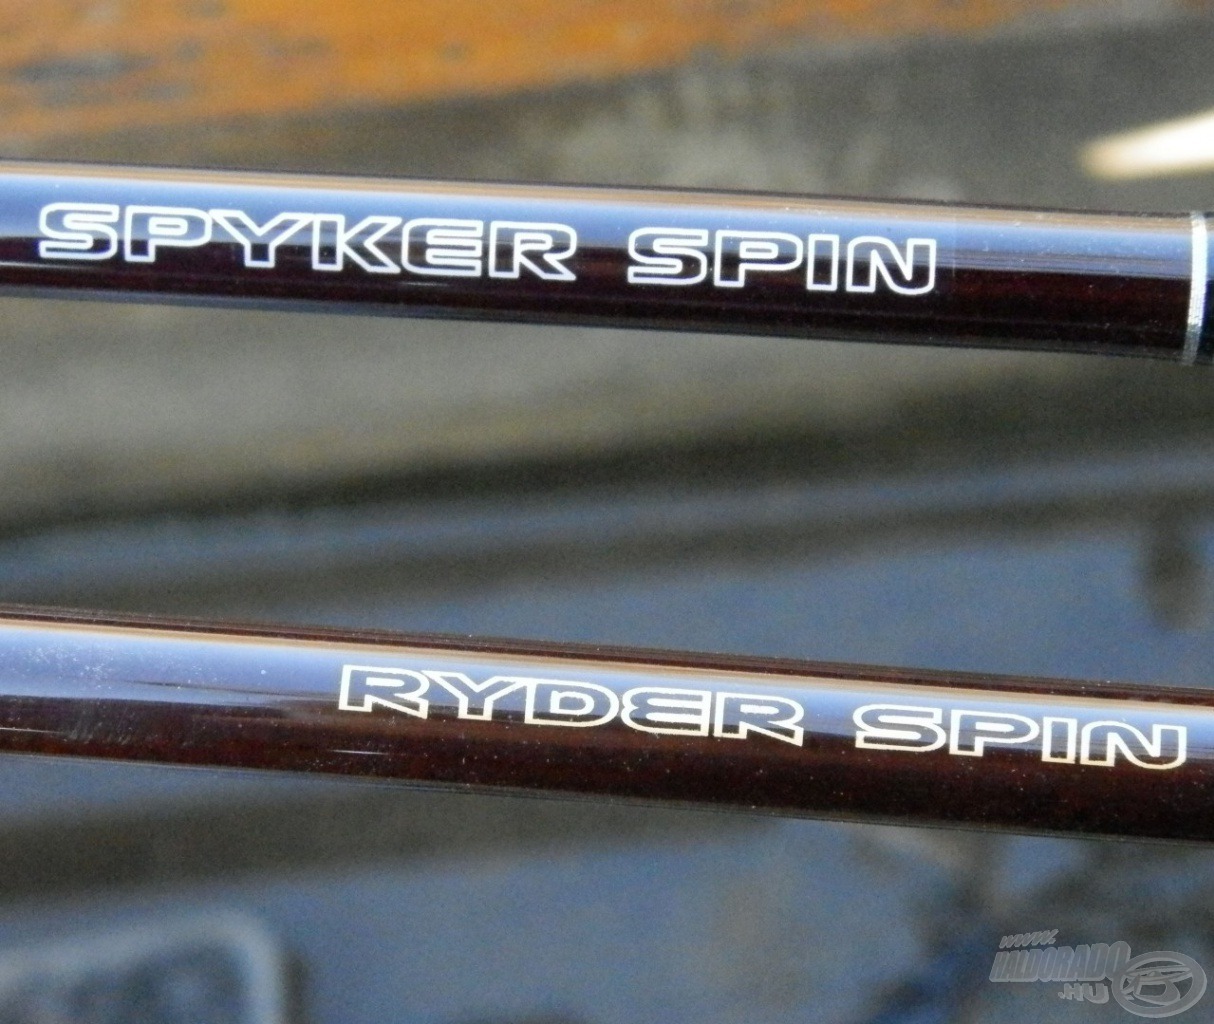 Spyker Spin és Ryder Spin pergető botok